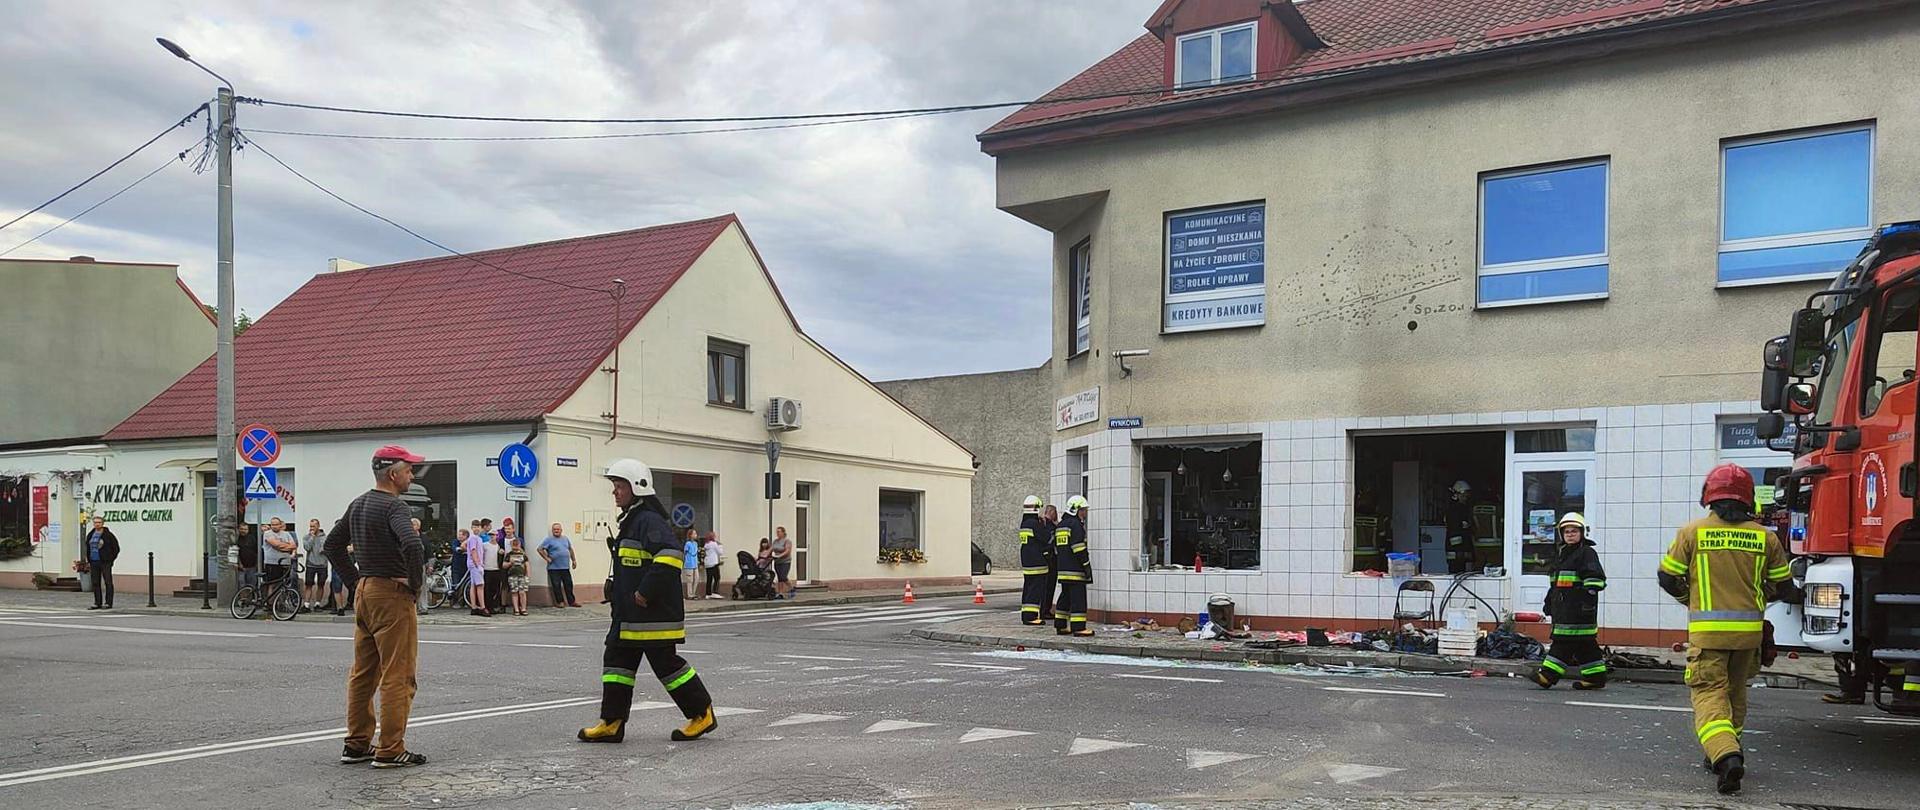 Zdjęcie przedstawia budynek narożny, w którym doszło do wybuchu. W budynku wypadły szyby w oknach. Na zewnątrz strażacy wykonujący zadania ratownicze oraz będący świadkami zdarzenia.